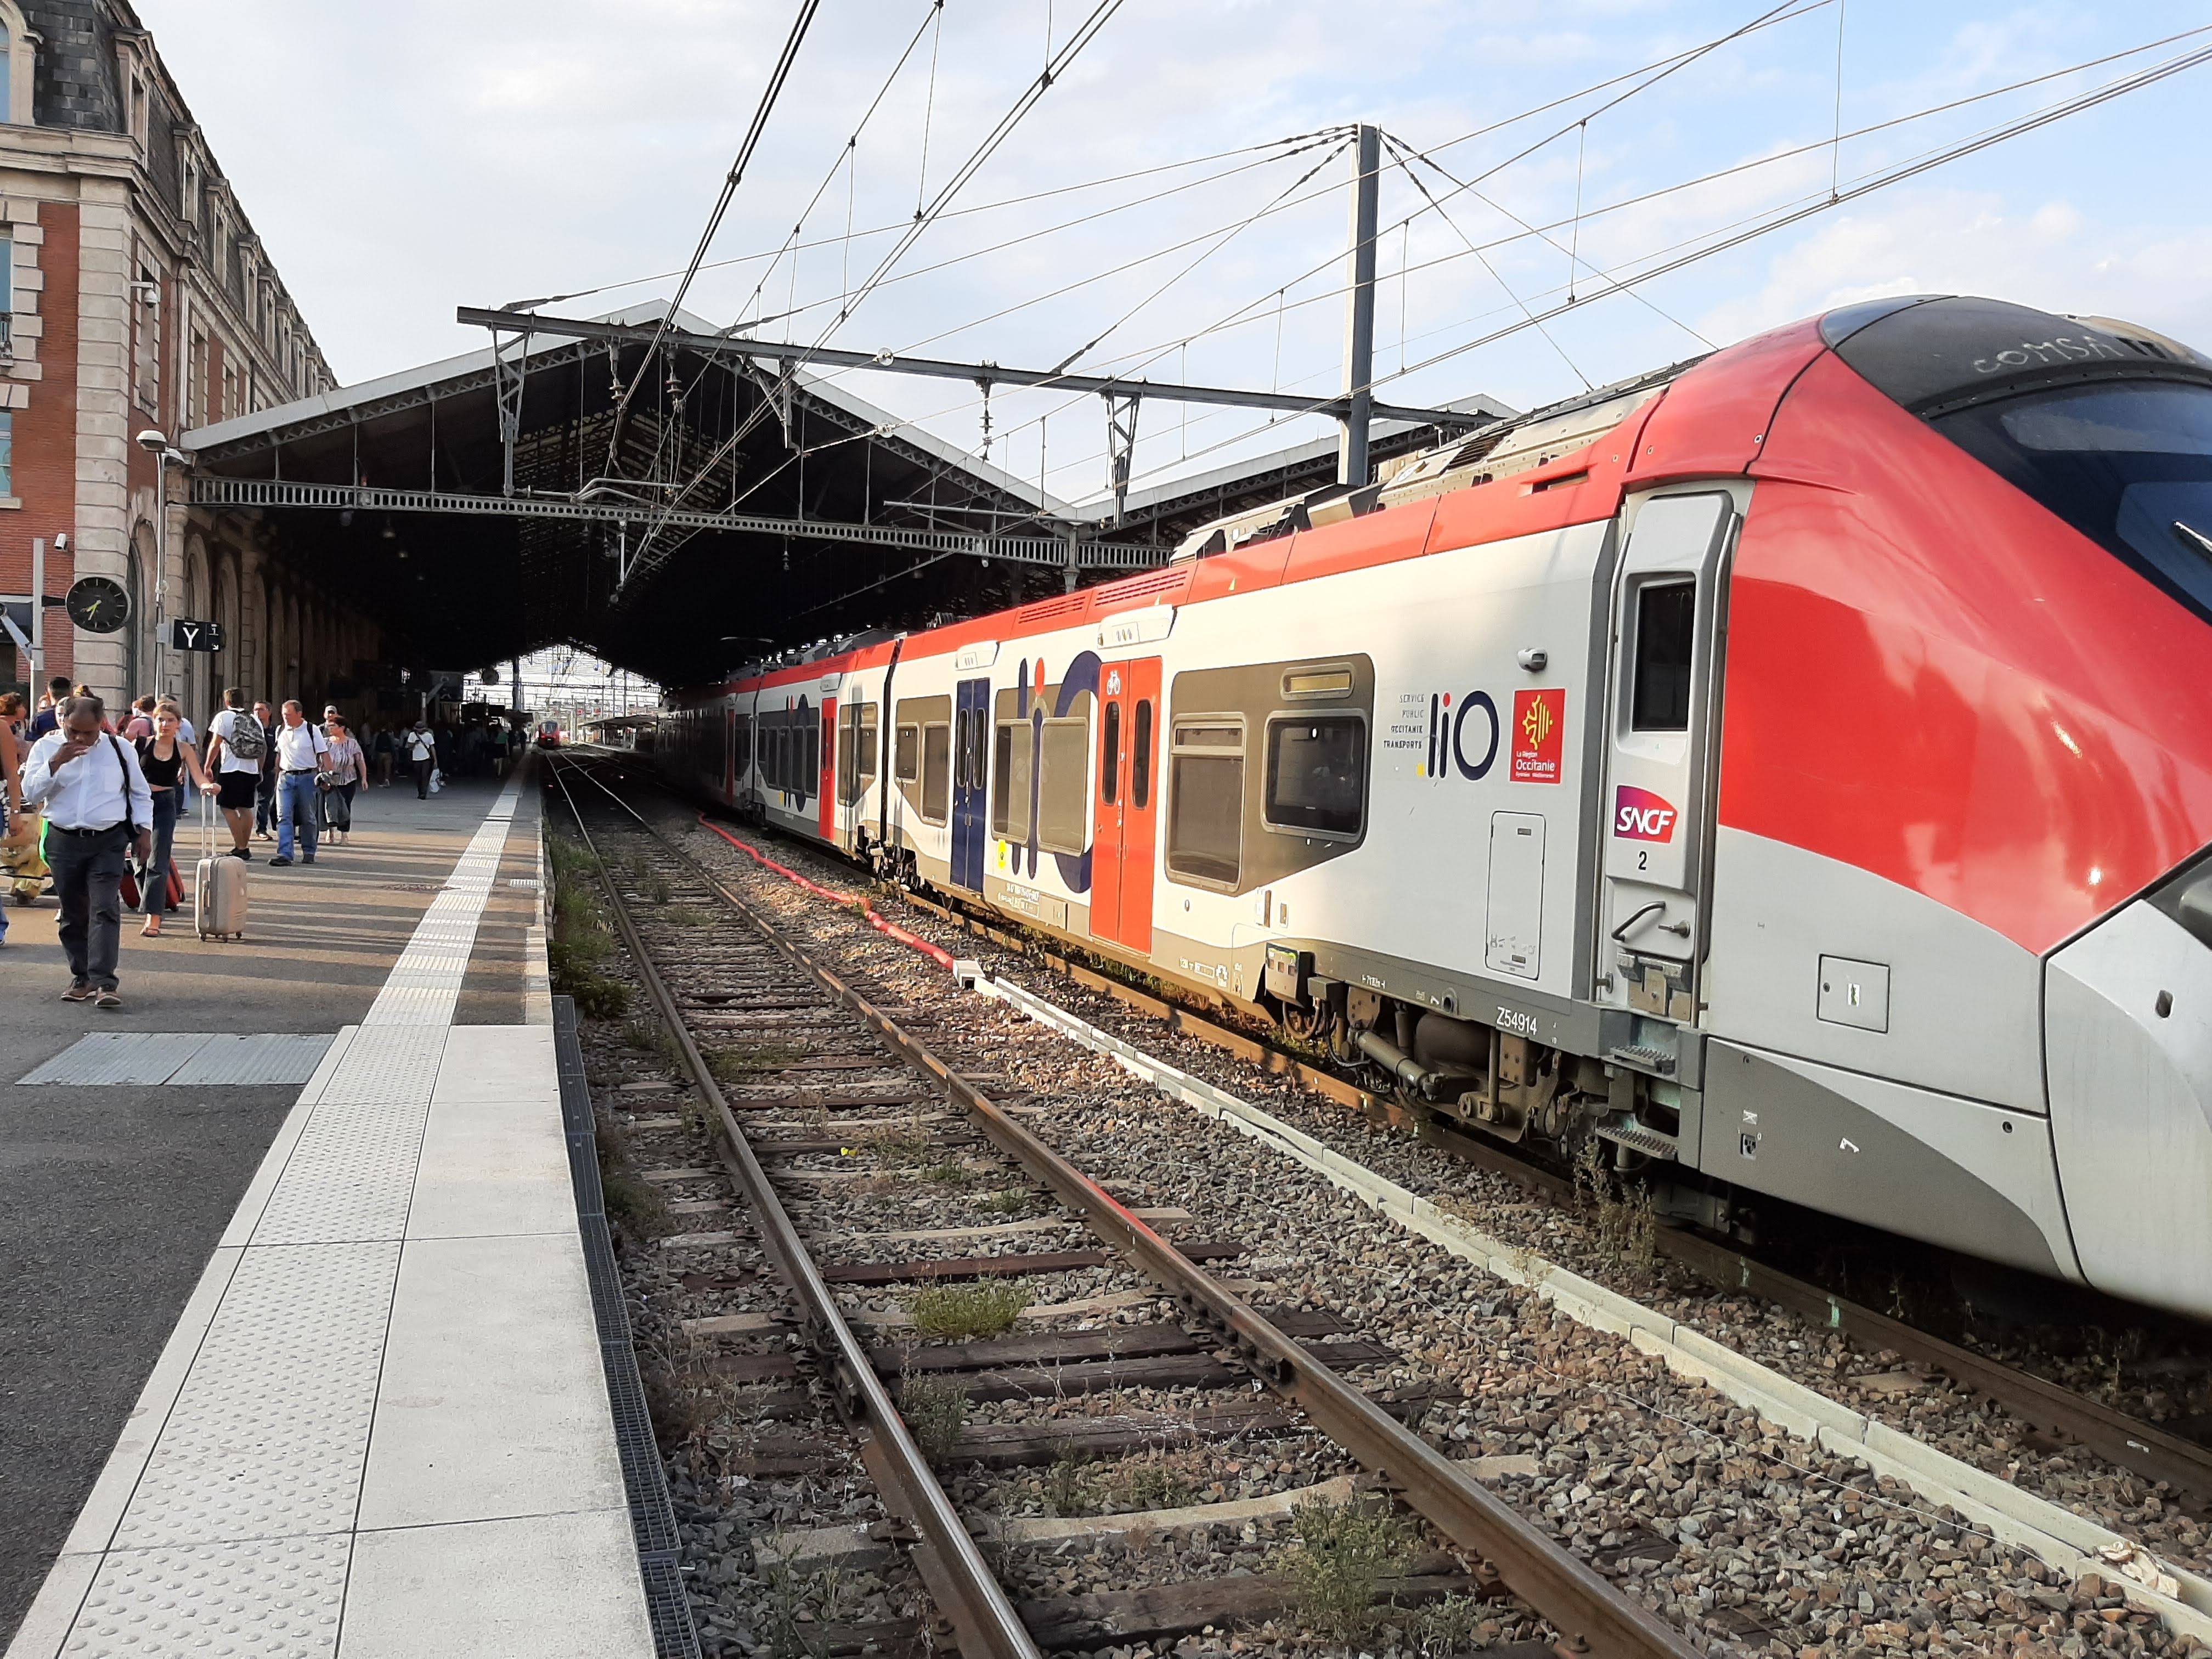 Le RER toulousain, un projet gigantesque découpé en plusieurs phases d'ici 2040, doit révolutionner le transport ferroviaire en Occitanie. (Photo : Anthony Assémat - Entreprises Occitanie)